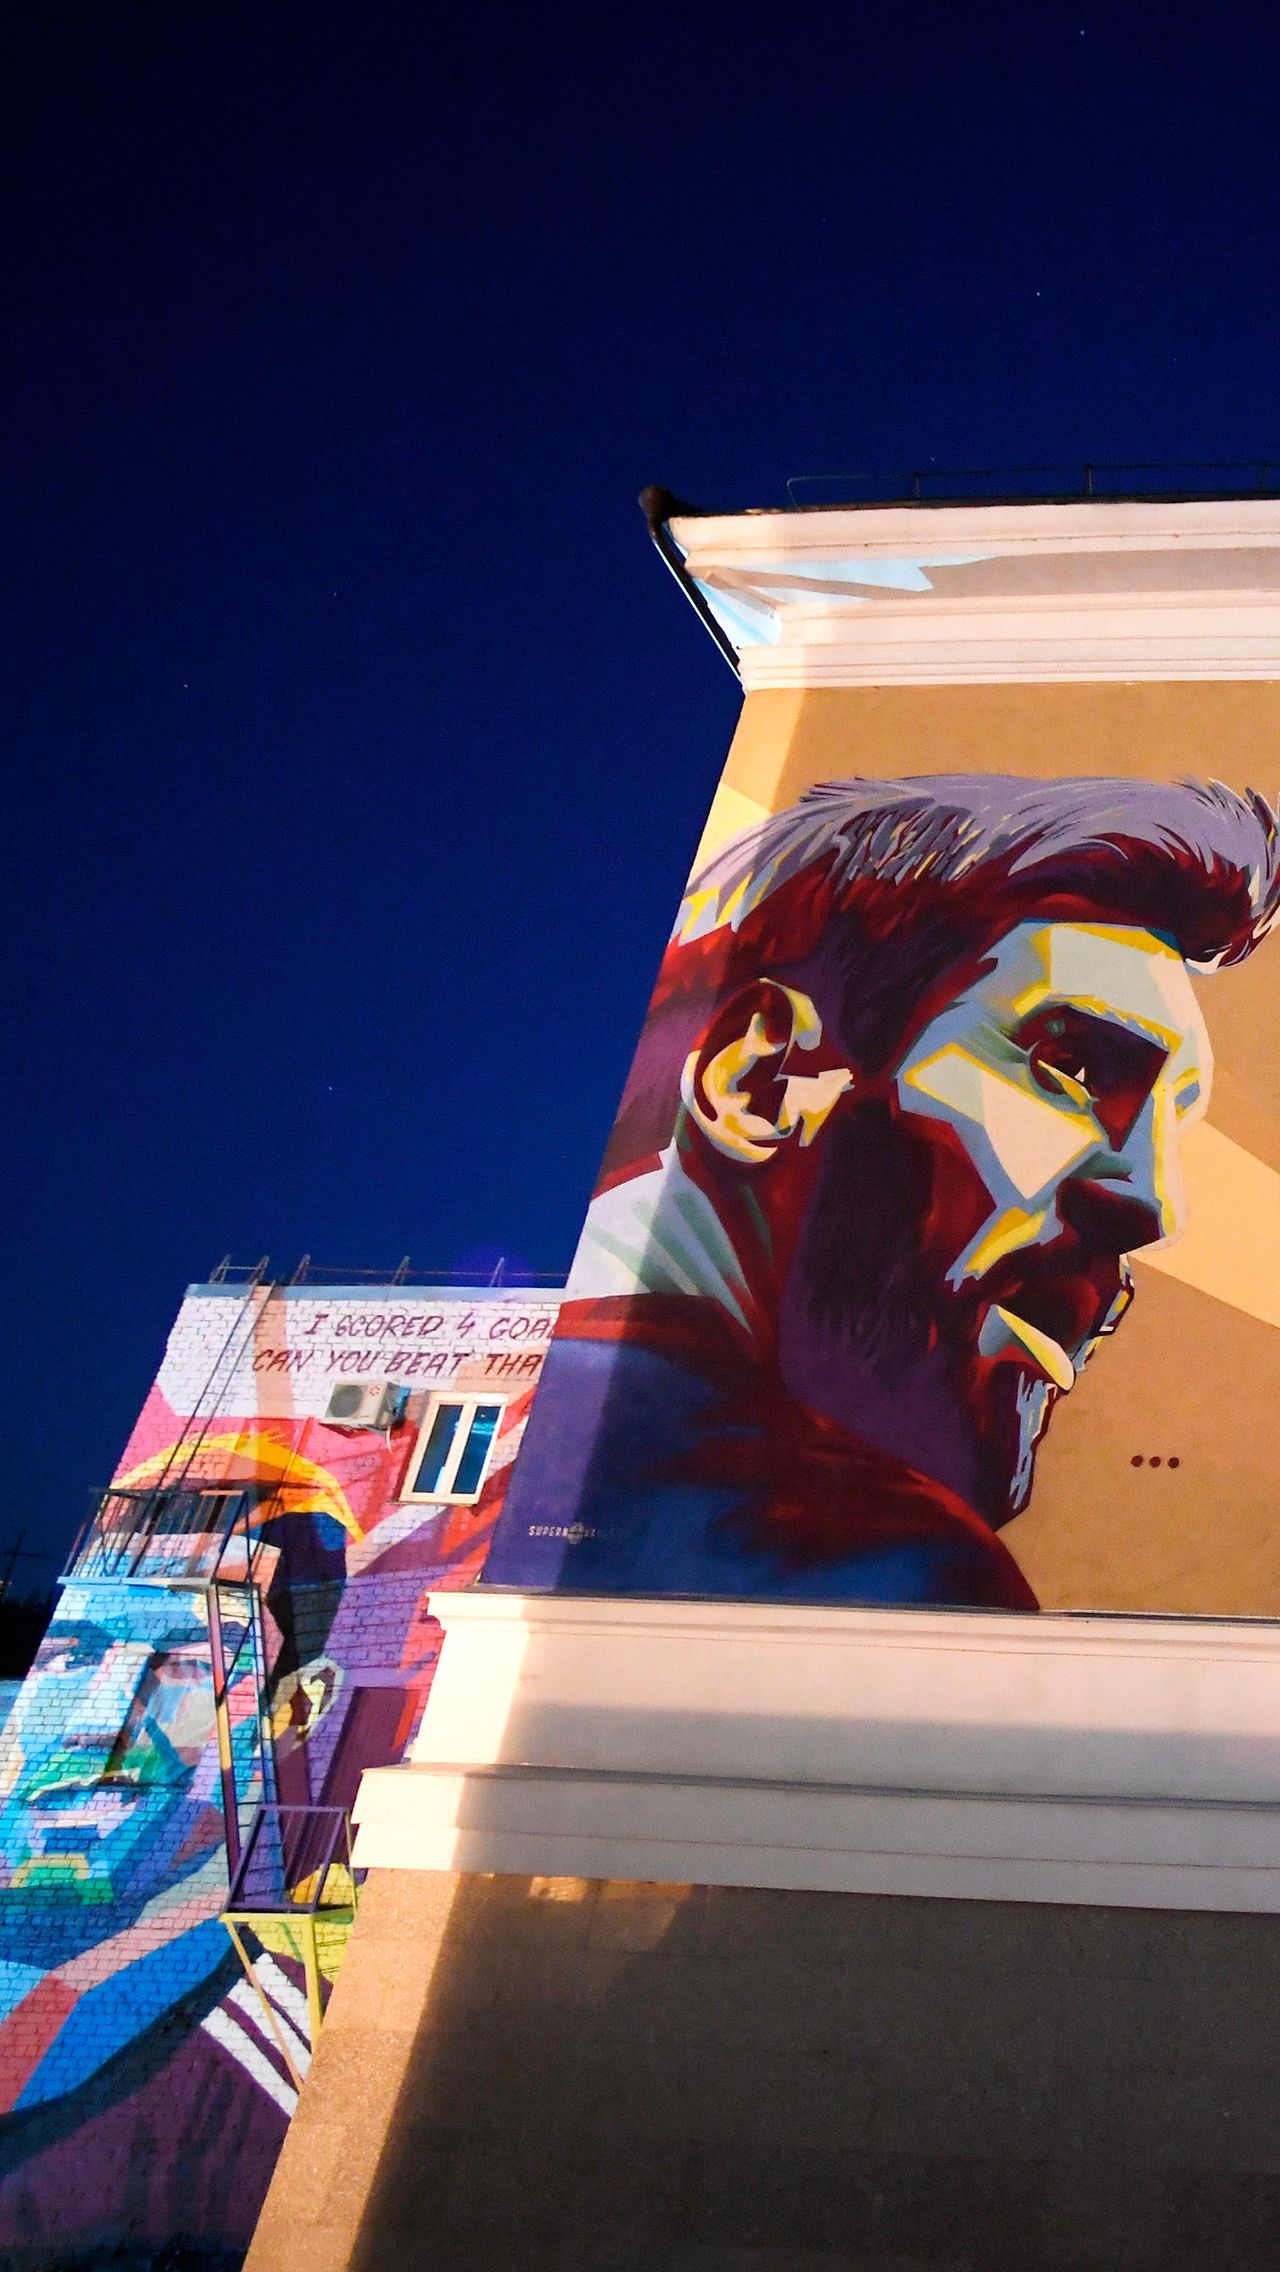 Позднее на соседнем здании появился и шестиметровый портрет Лео Месси. Успели как раз к приезду аргентинца в Казань.